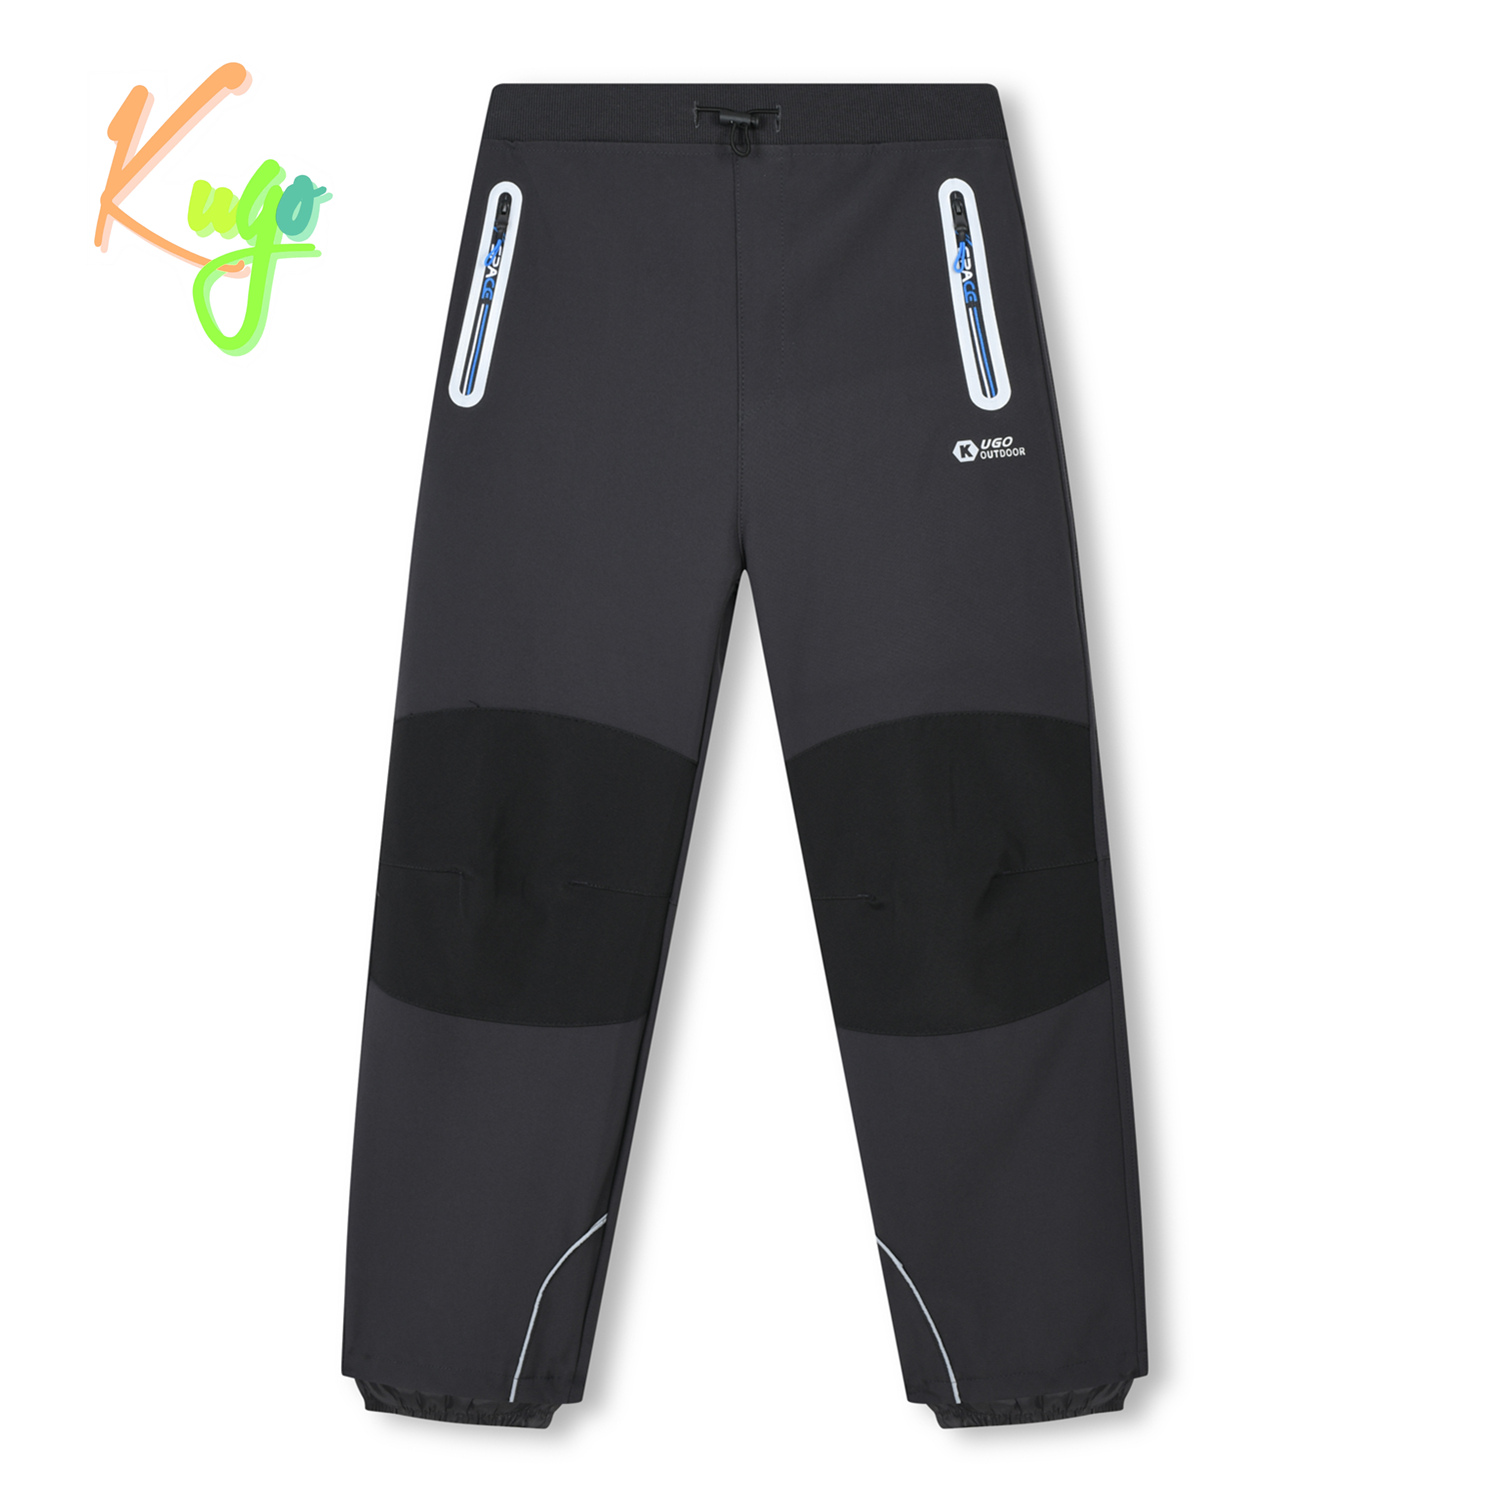 Chlapecké softshellové kalhoty - KUGO HK3119, tmavě šedá / modré zipy Barva: Šedá, Velikost: 134